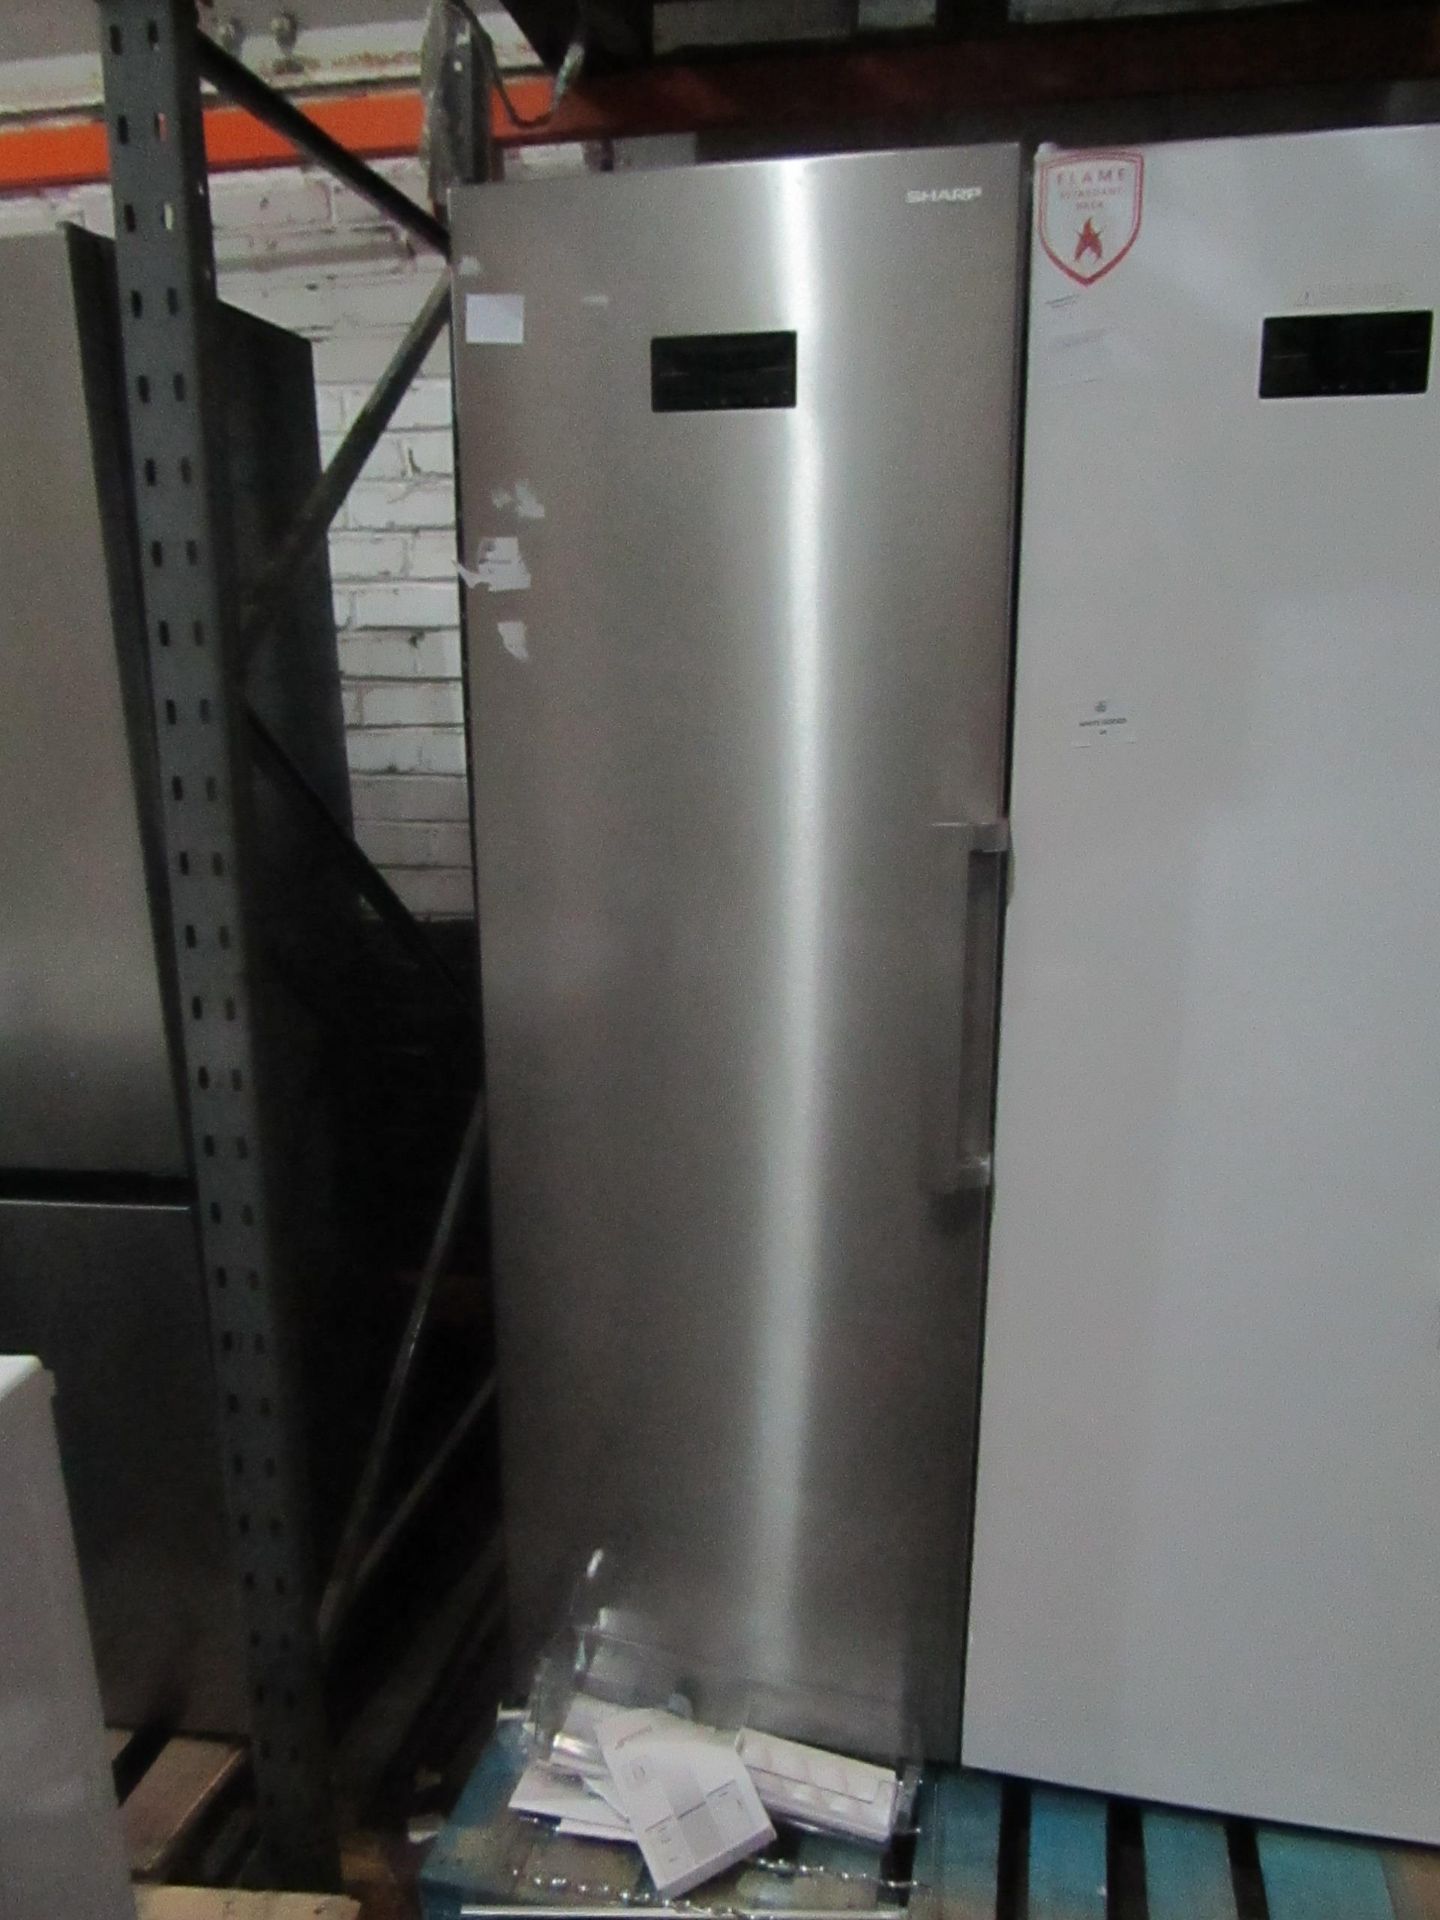 Sharp tall freestanding freezer, not working.